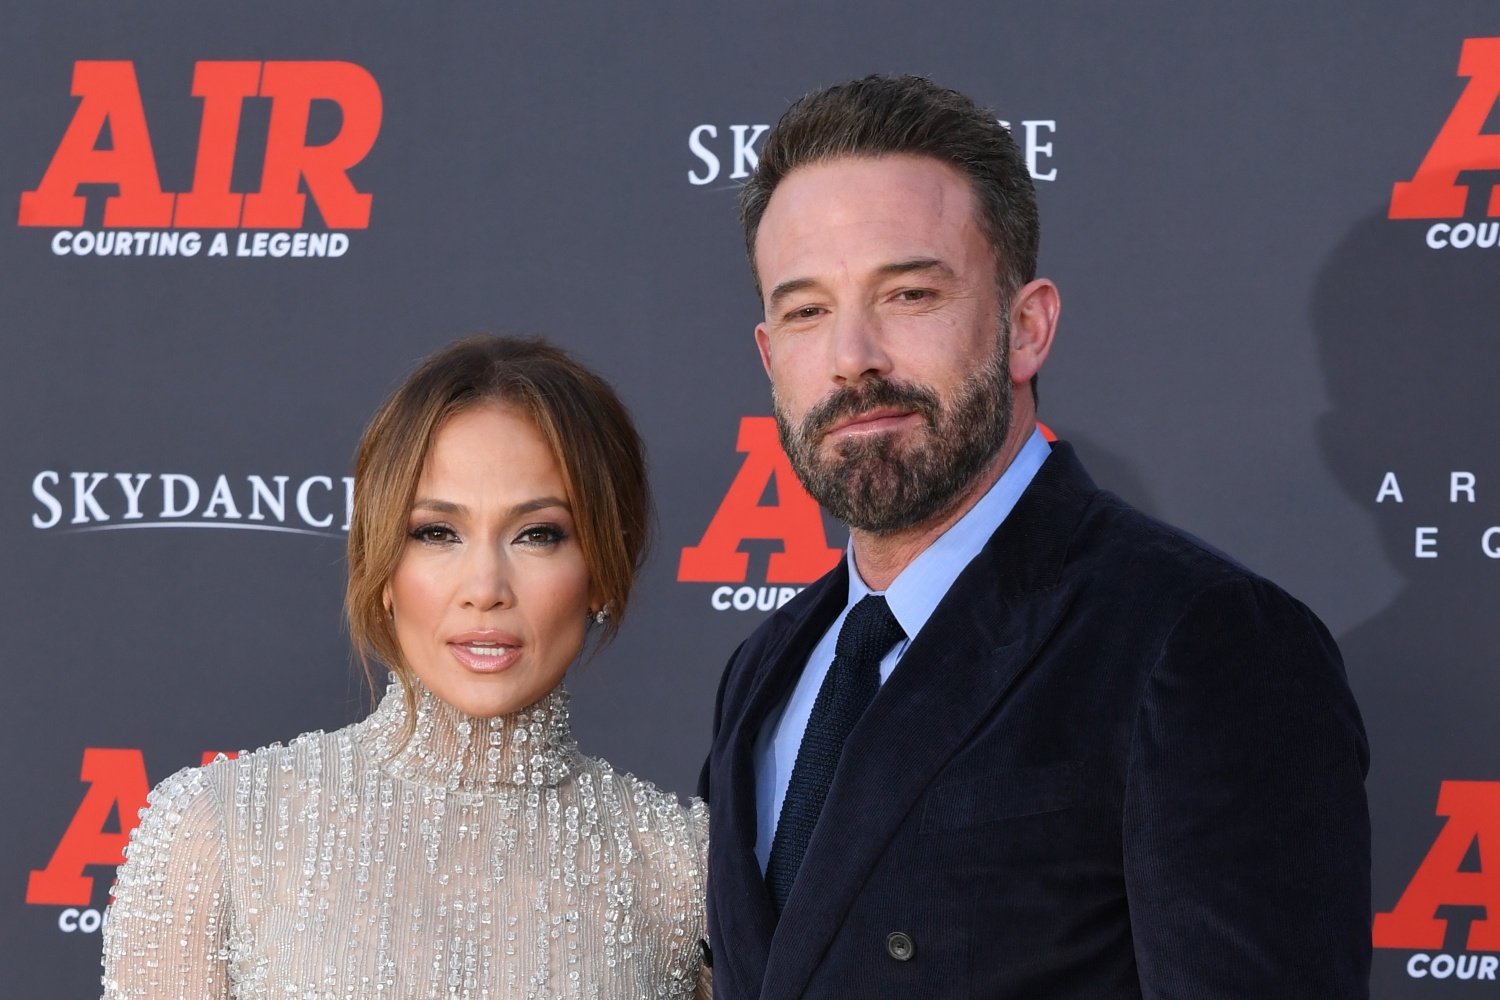 Jennifer Lopez upset by Ben Affleck’s ‘sympathy point’ about divorce talk